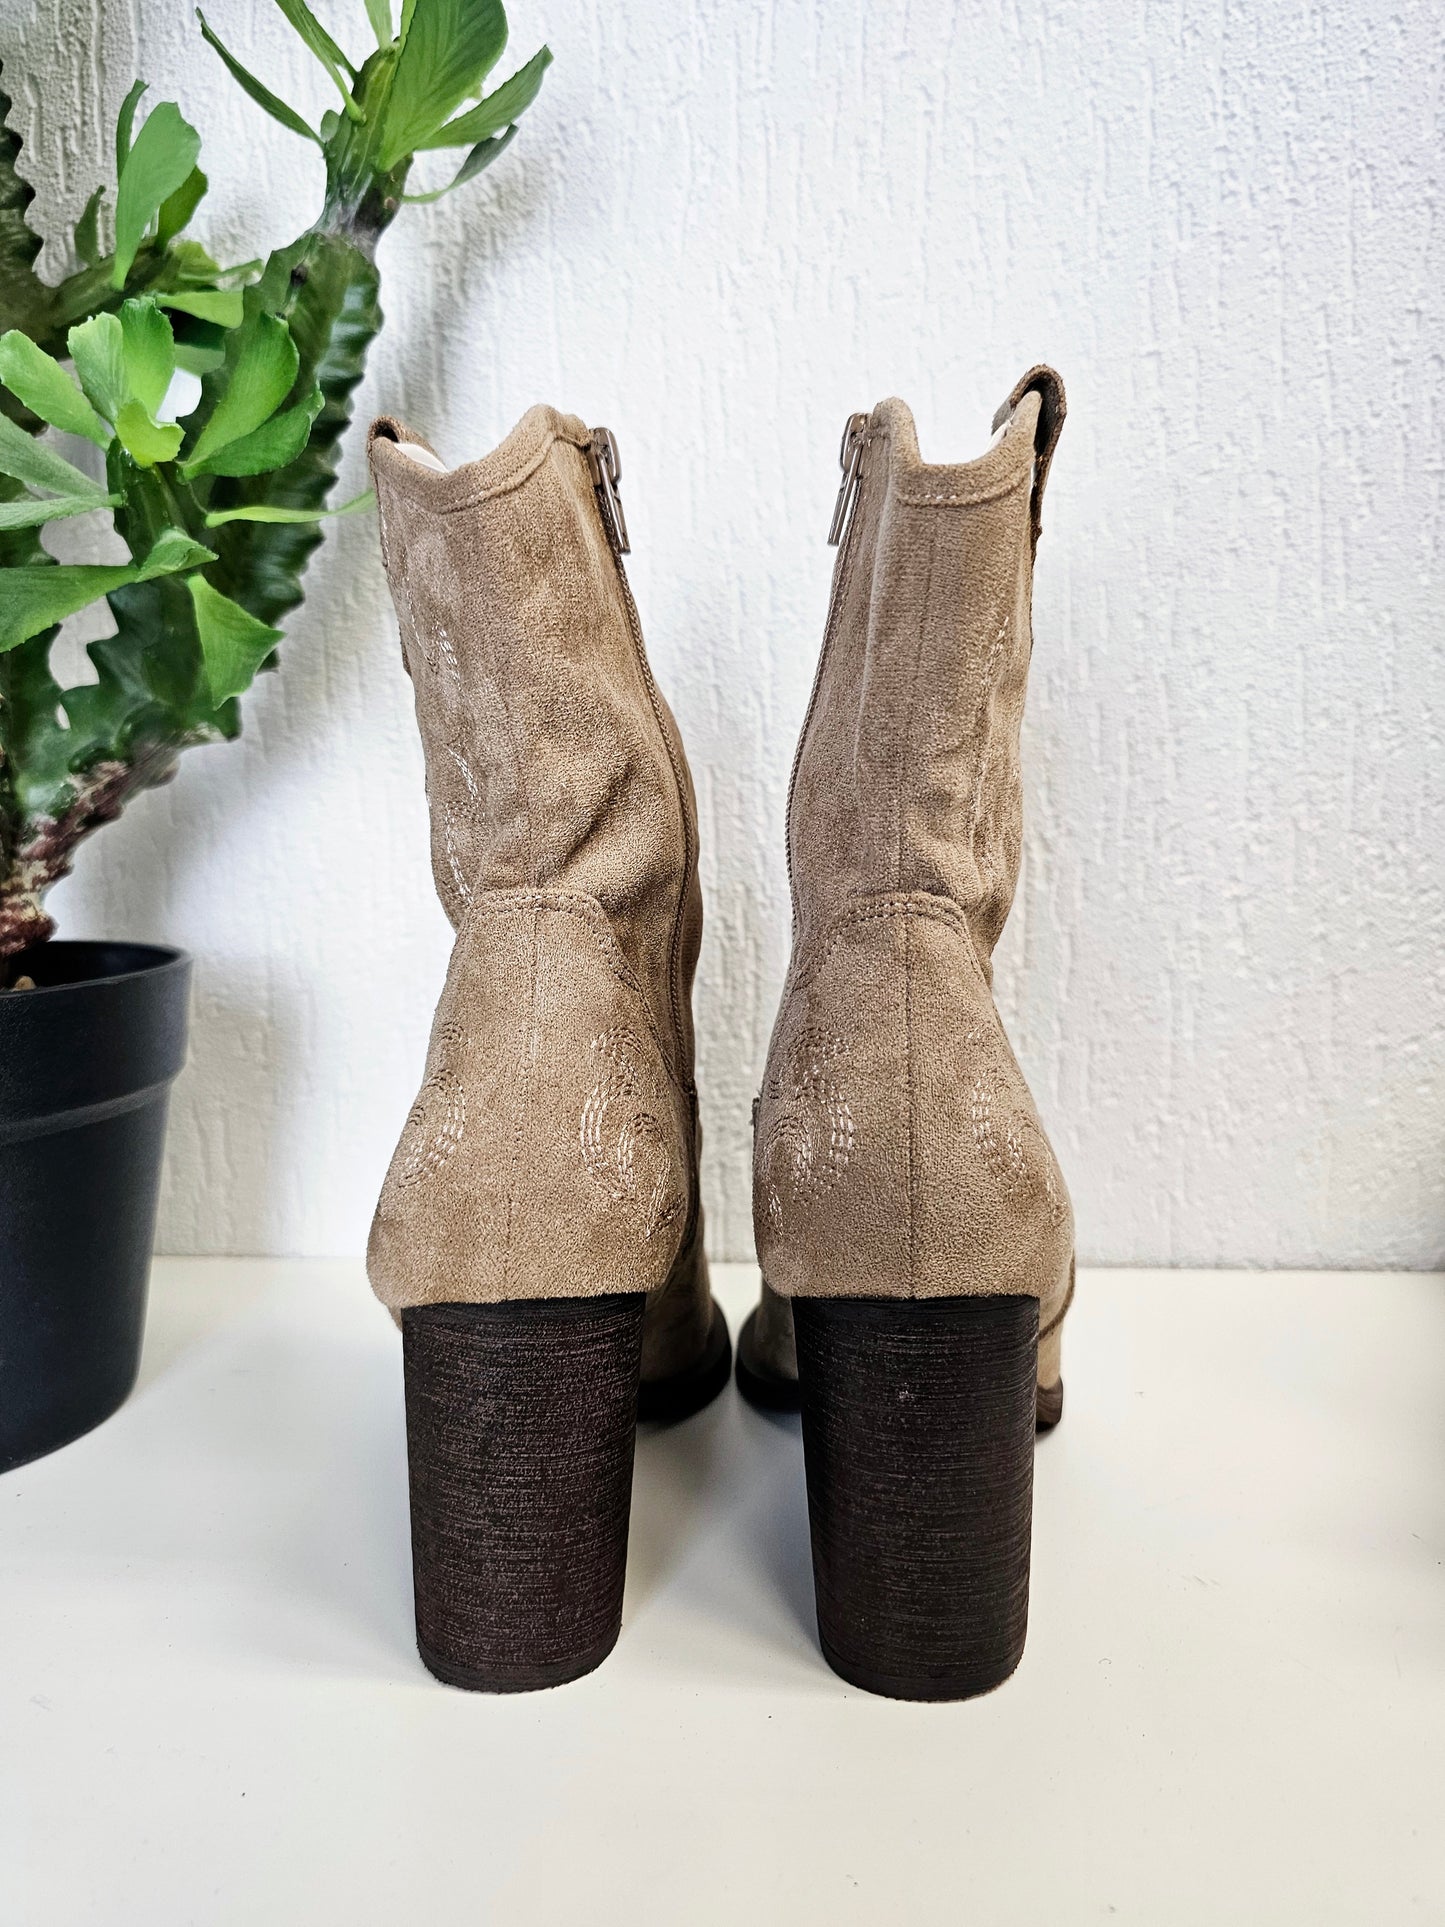 Halbhohe Cowboy-Stiefel/Boots in Beige mit Absatz C-187